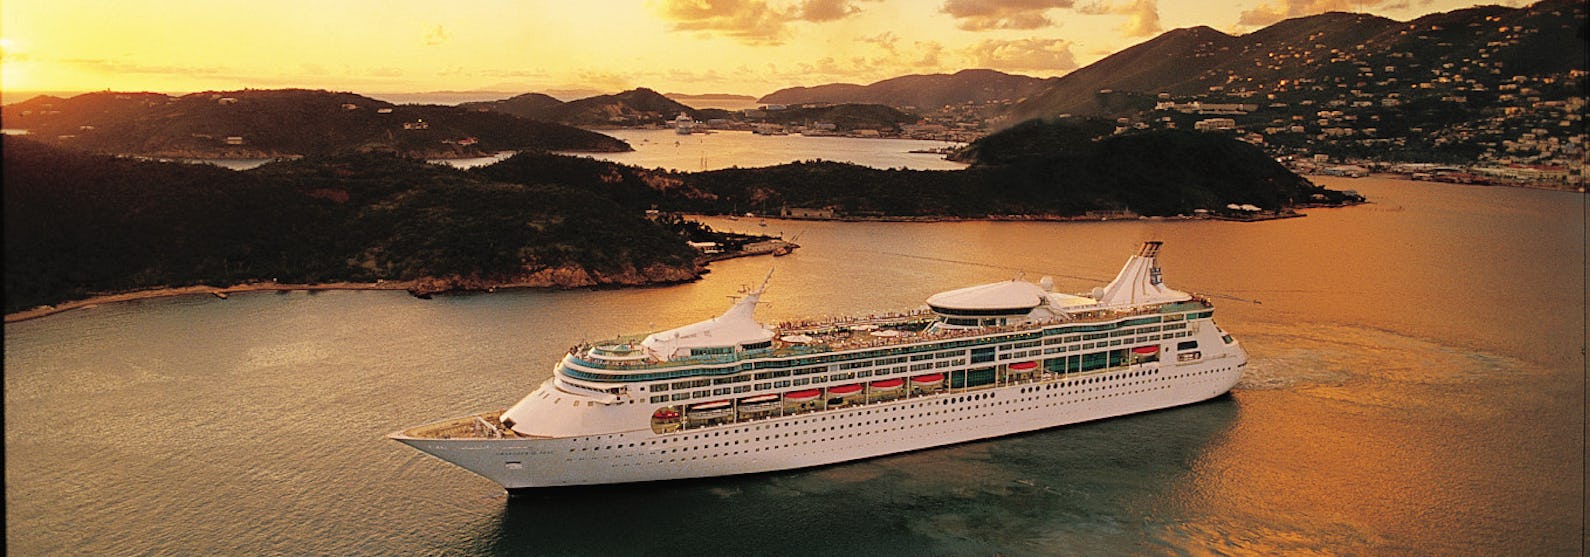 Bild på Rhapsody of the Seas, taget från sidan, utanför en Karibisk ö i solnedgången.